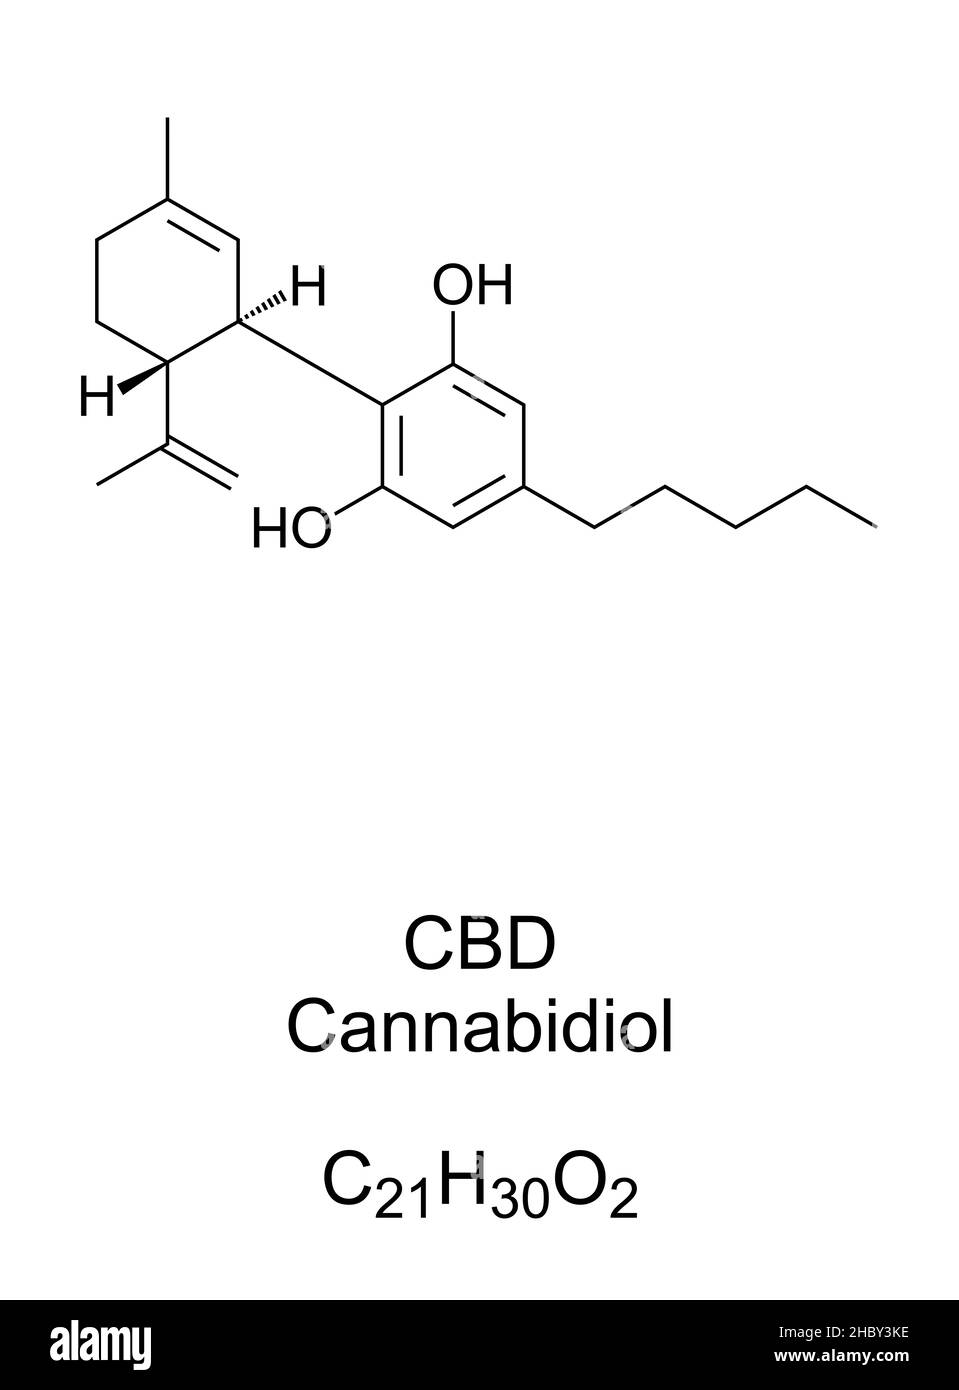 Cannabidiol, CBD, chemische Formel und Struktur. Eines der Cannabinoide und eine wichtige Verbindung, die in Cannabis-Sativa-Pflanzen gefunden wird. Stockfoto